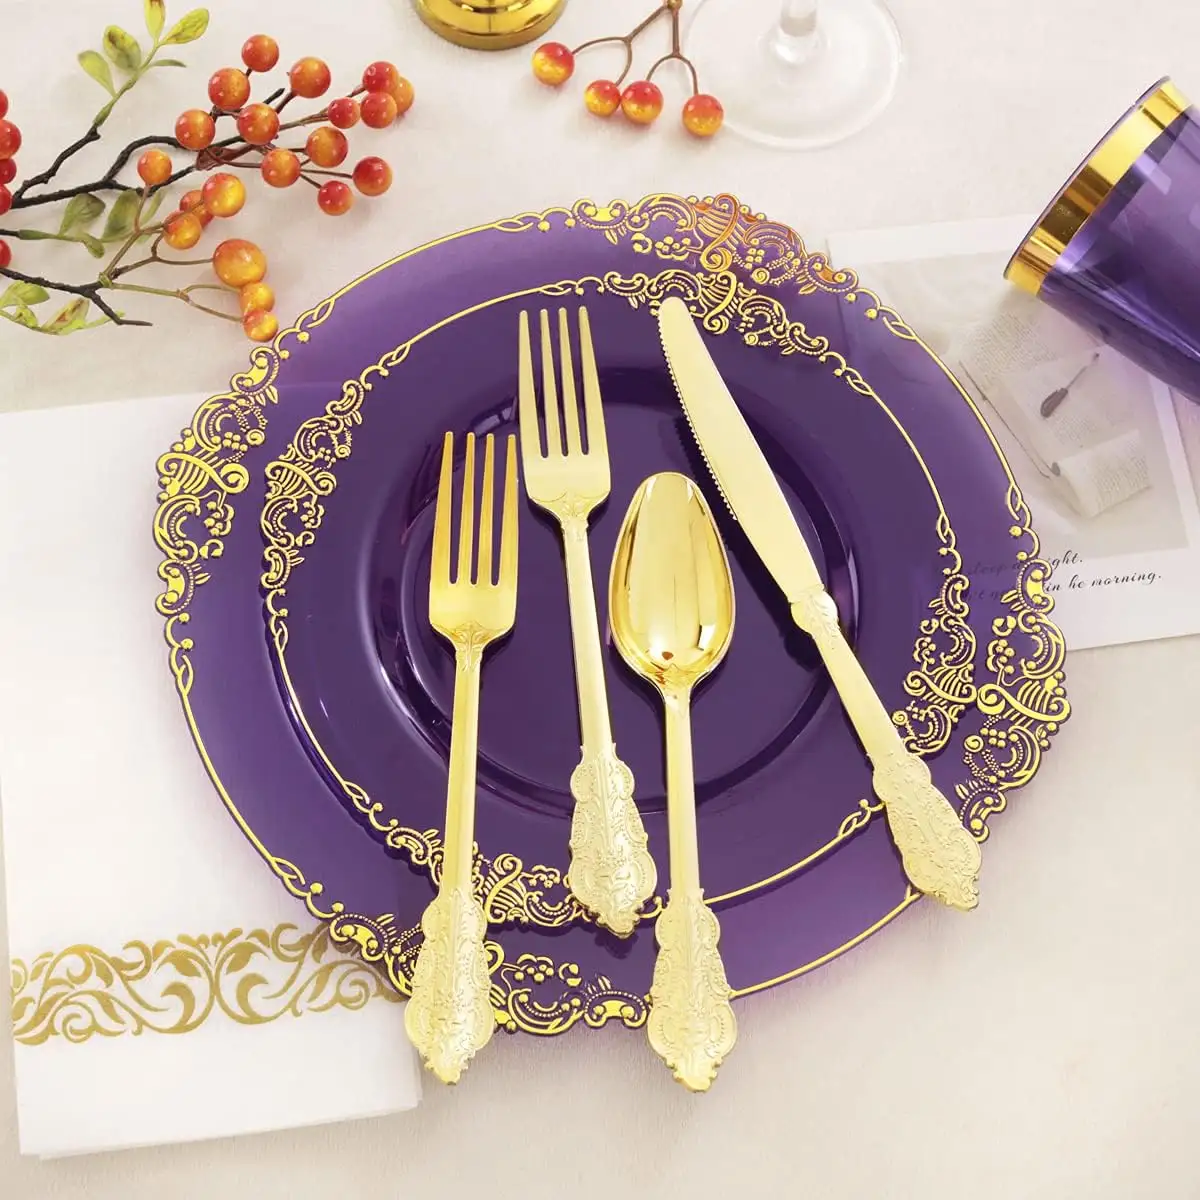 Роскошные прозрачные золотые розовые кружевные тарелки, тарелки премиум класса, пластиковые зарядные тарелки, набор свадебных одноразовых обеденных тарелок